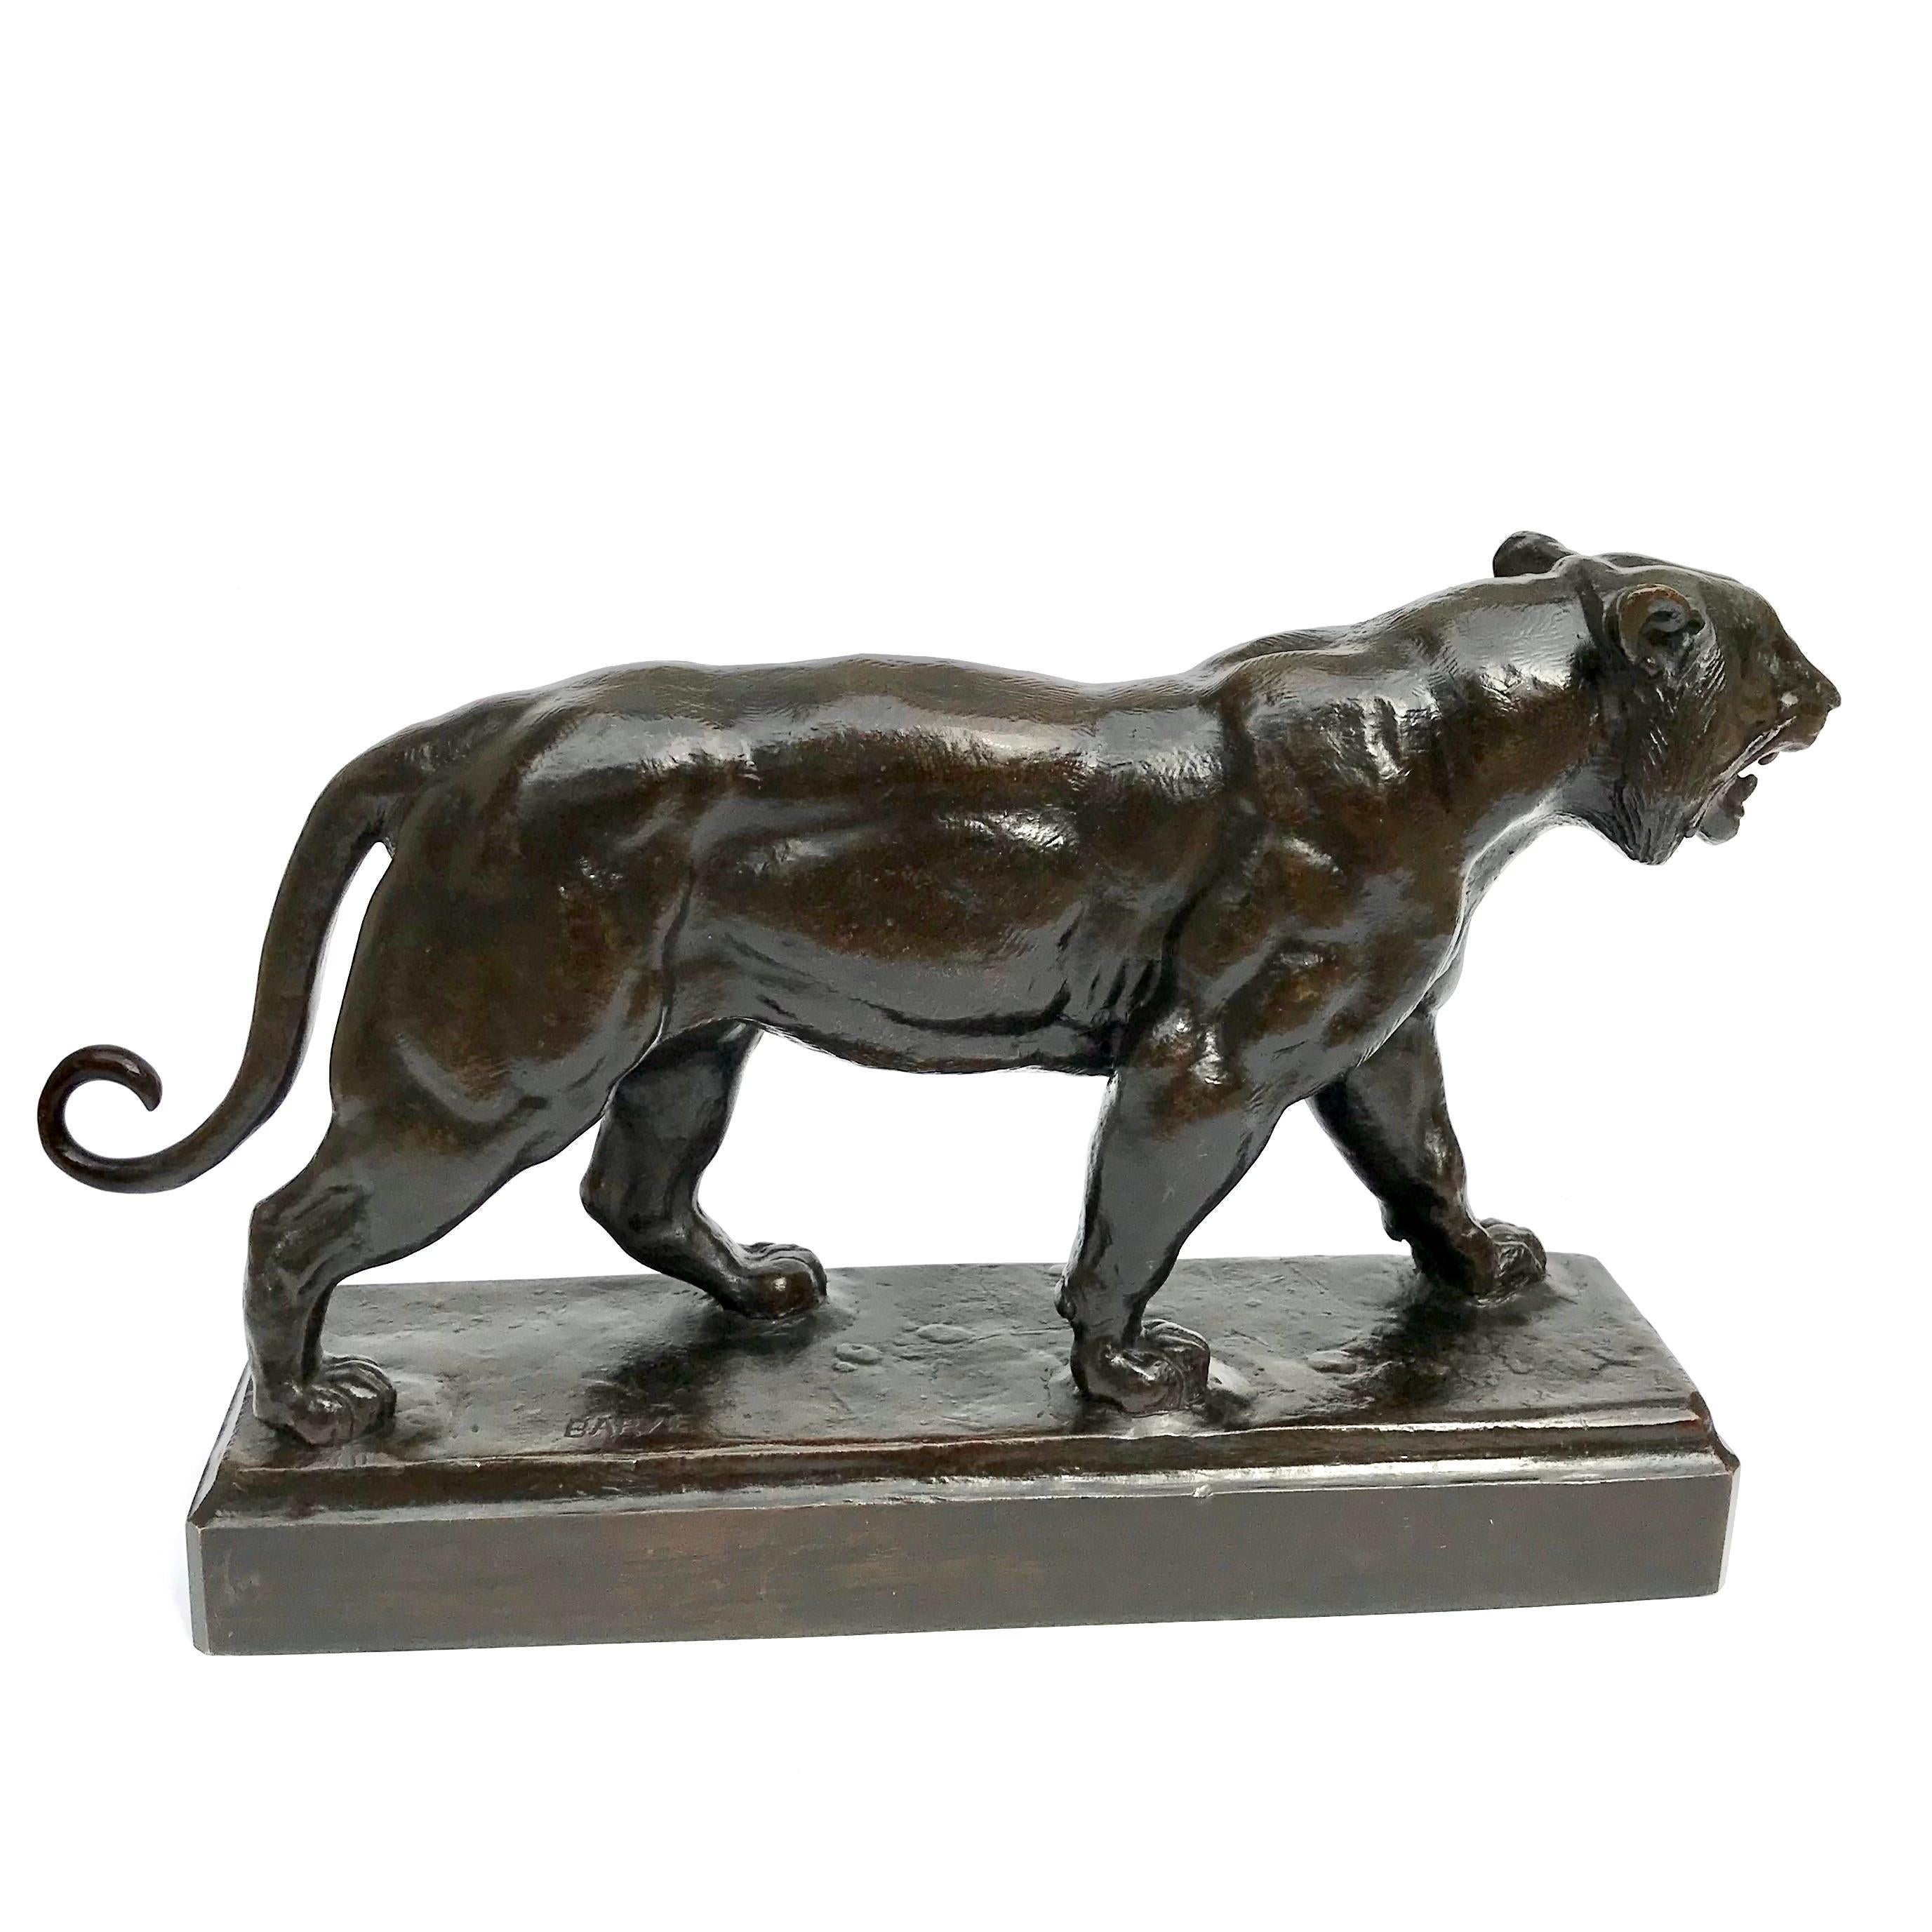 Antoine-Louis Barye (Französisch 1799 - 1875) 
tigre marchant (Wandertiger)
signiert: BARYE CIRCA 1876
Bronze, dunkelbraune Patina
Abmessungen: 17 Zoll lang x 9,75 Zoll hoch x 4 Zoll tief.

Diese ältere Bronze, die von Brame unmittelbar nach Baryes